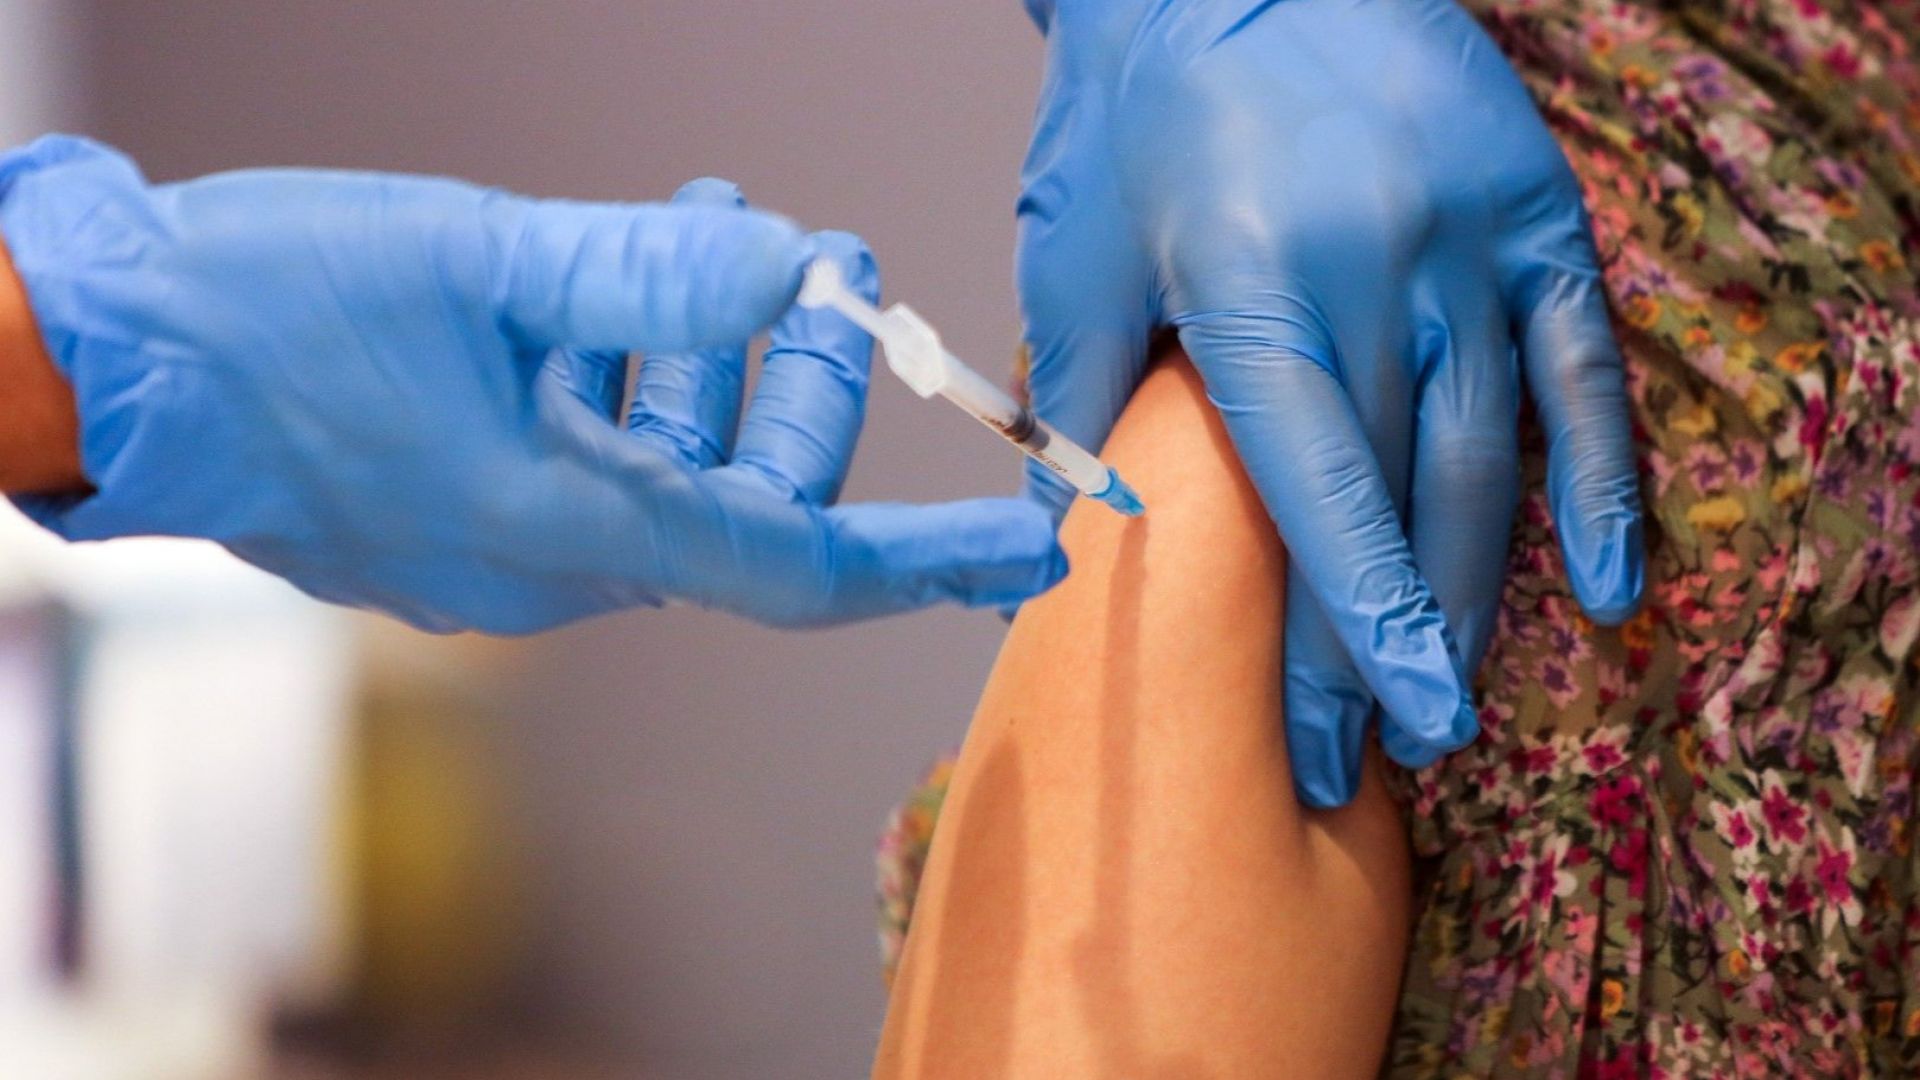 Първи смъртен случай след ваксиниране с "Пфайзер" в Нова Зеландия